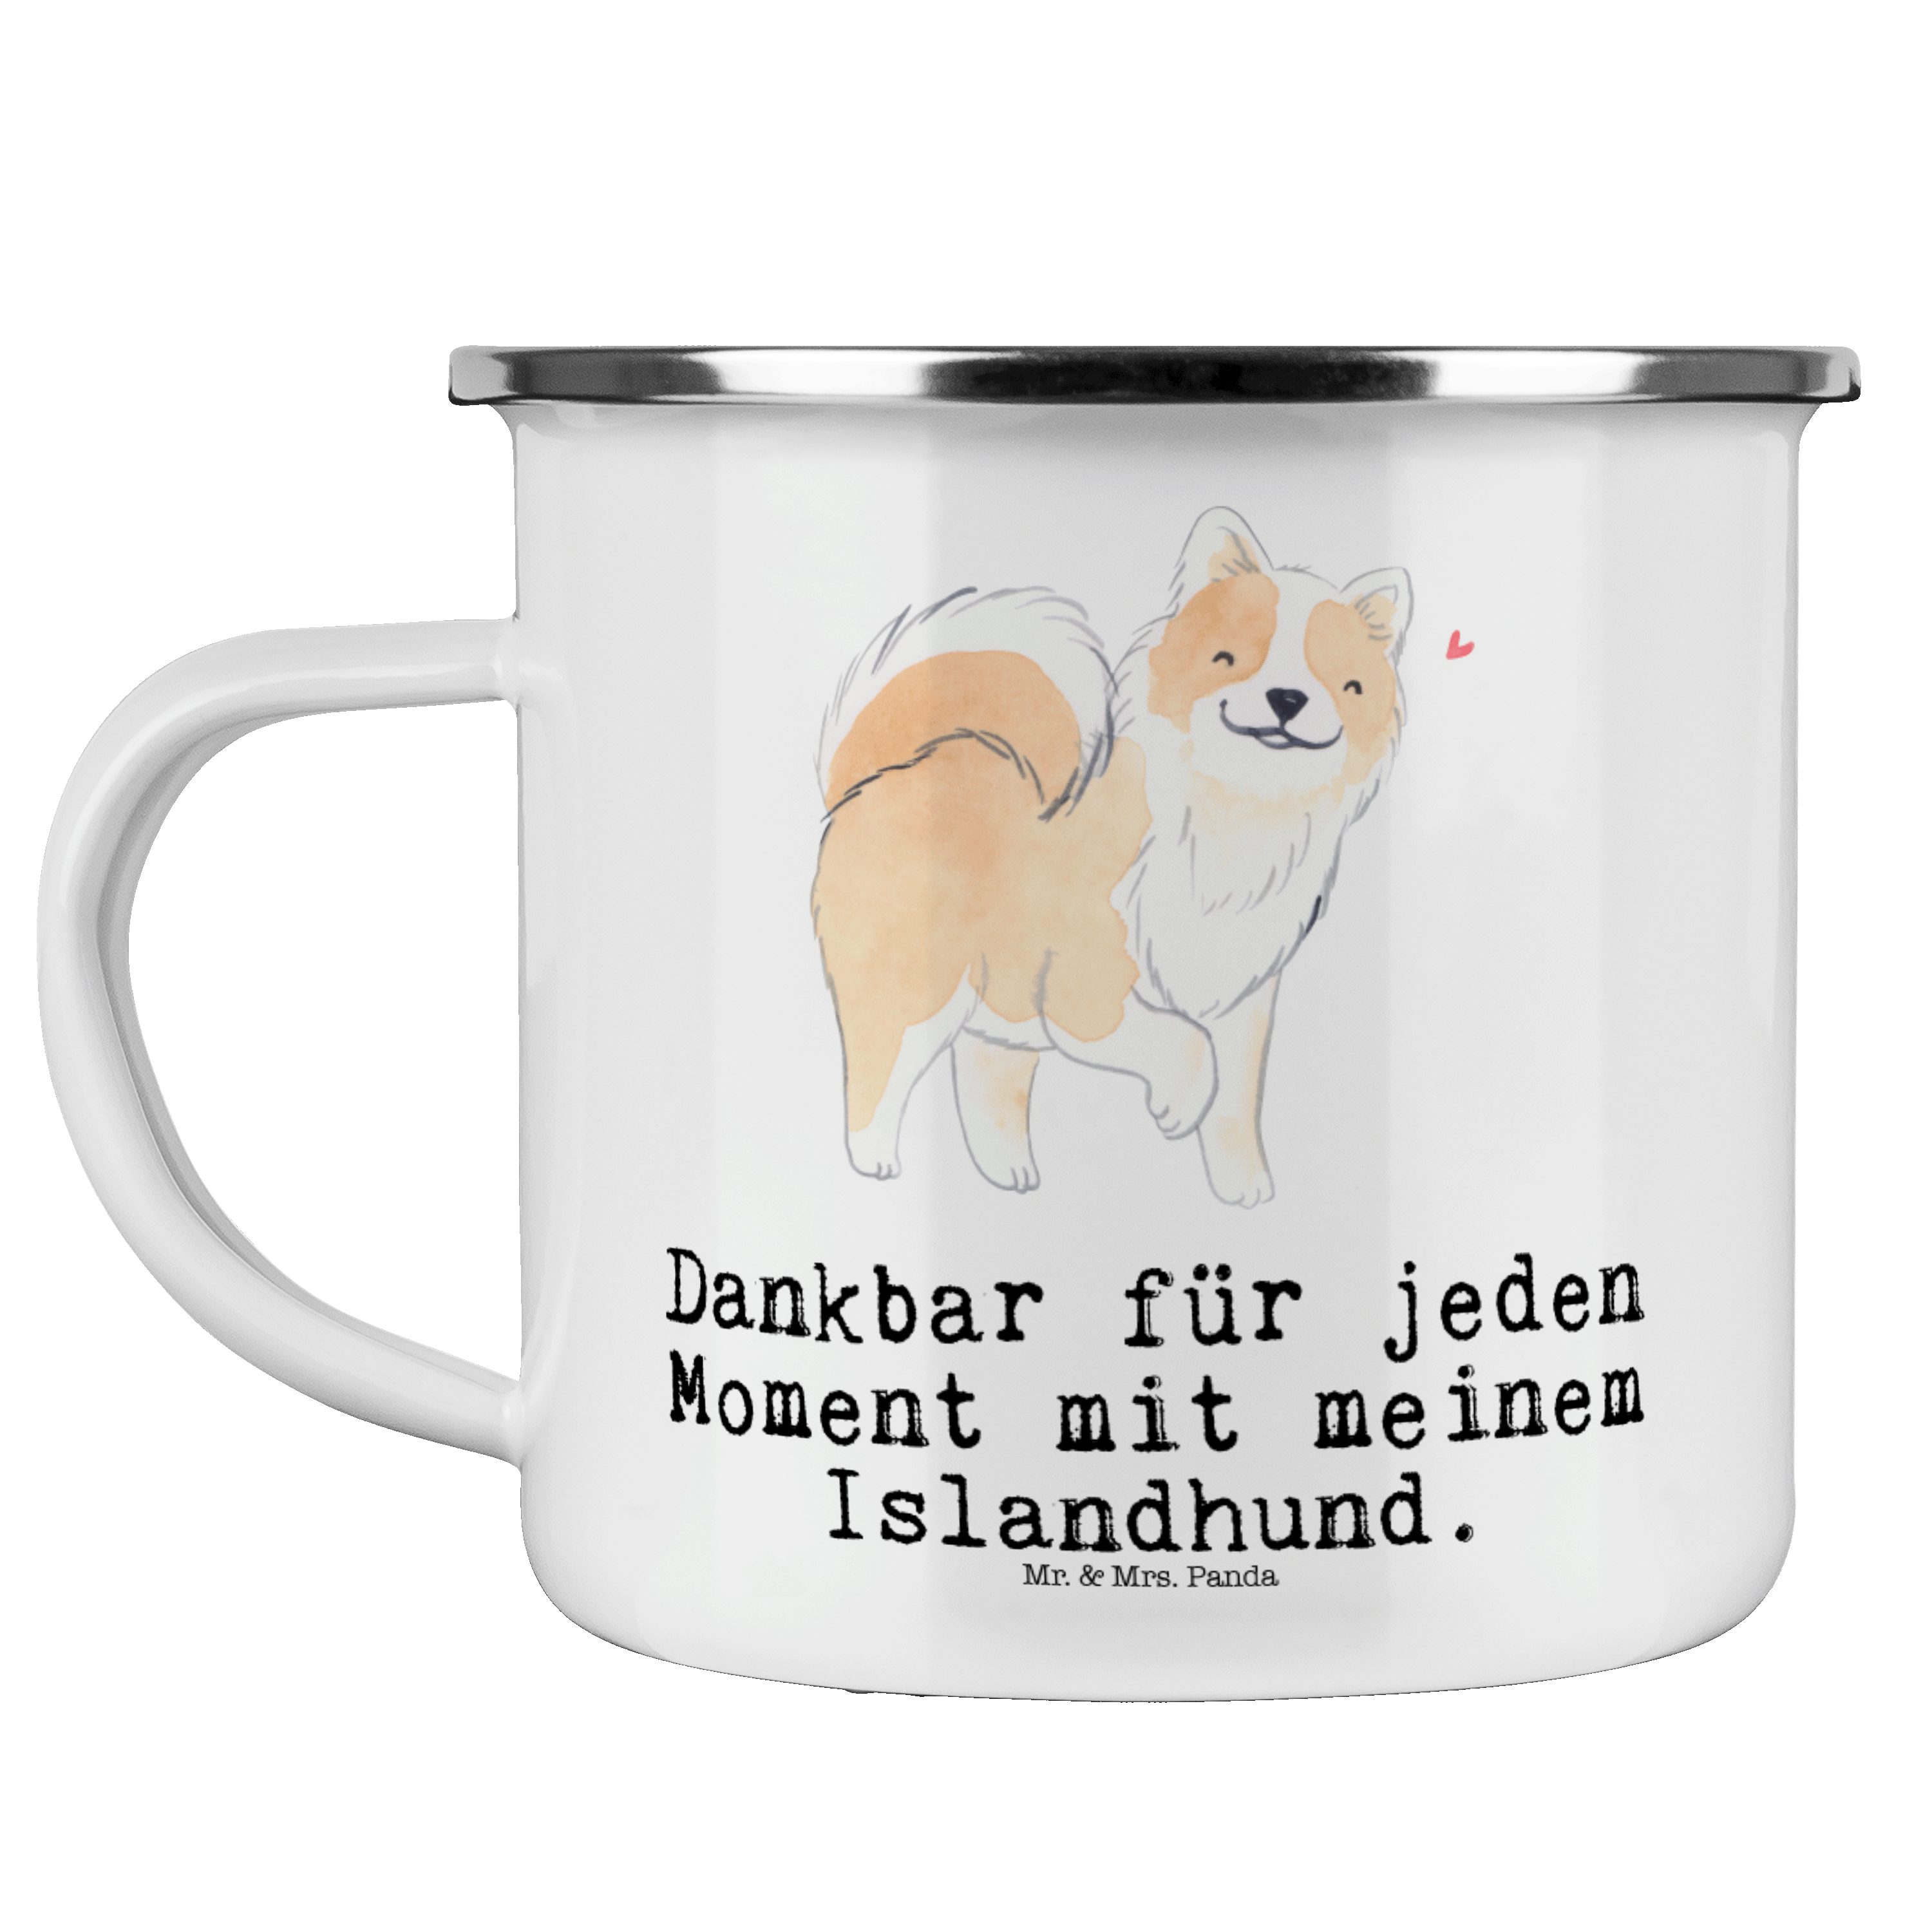 Mr. & Mrs. Panda Becher Islandhund Moment - Weiß - Geschenk, Campingtasse, Trinkbecher, Metal, Emaille